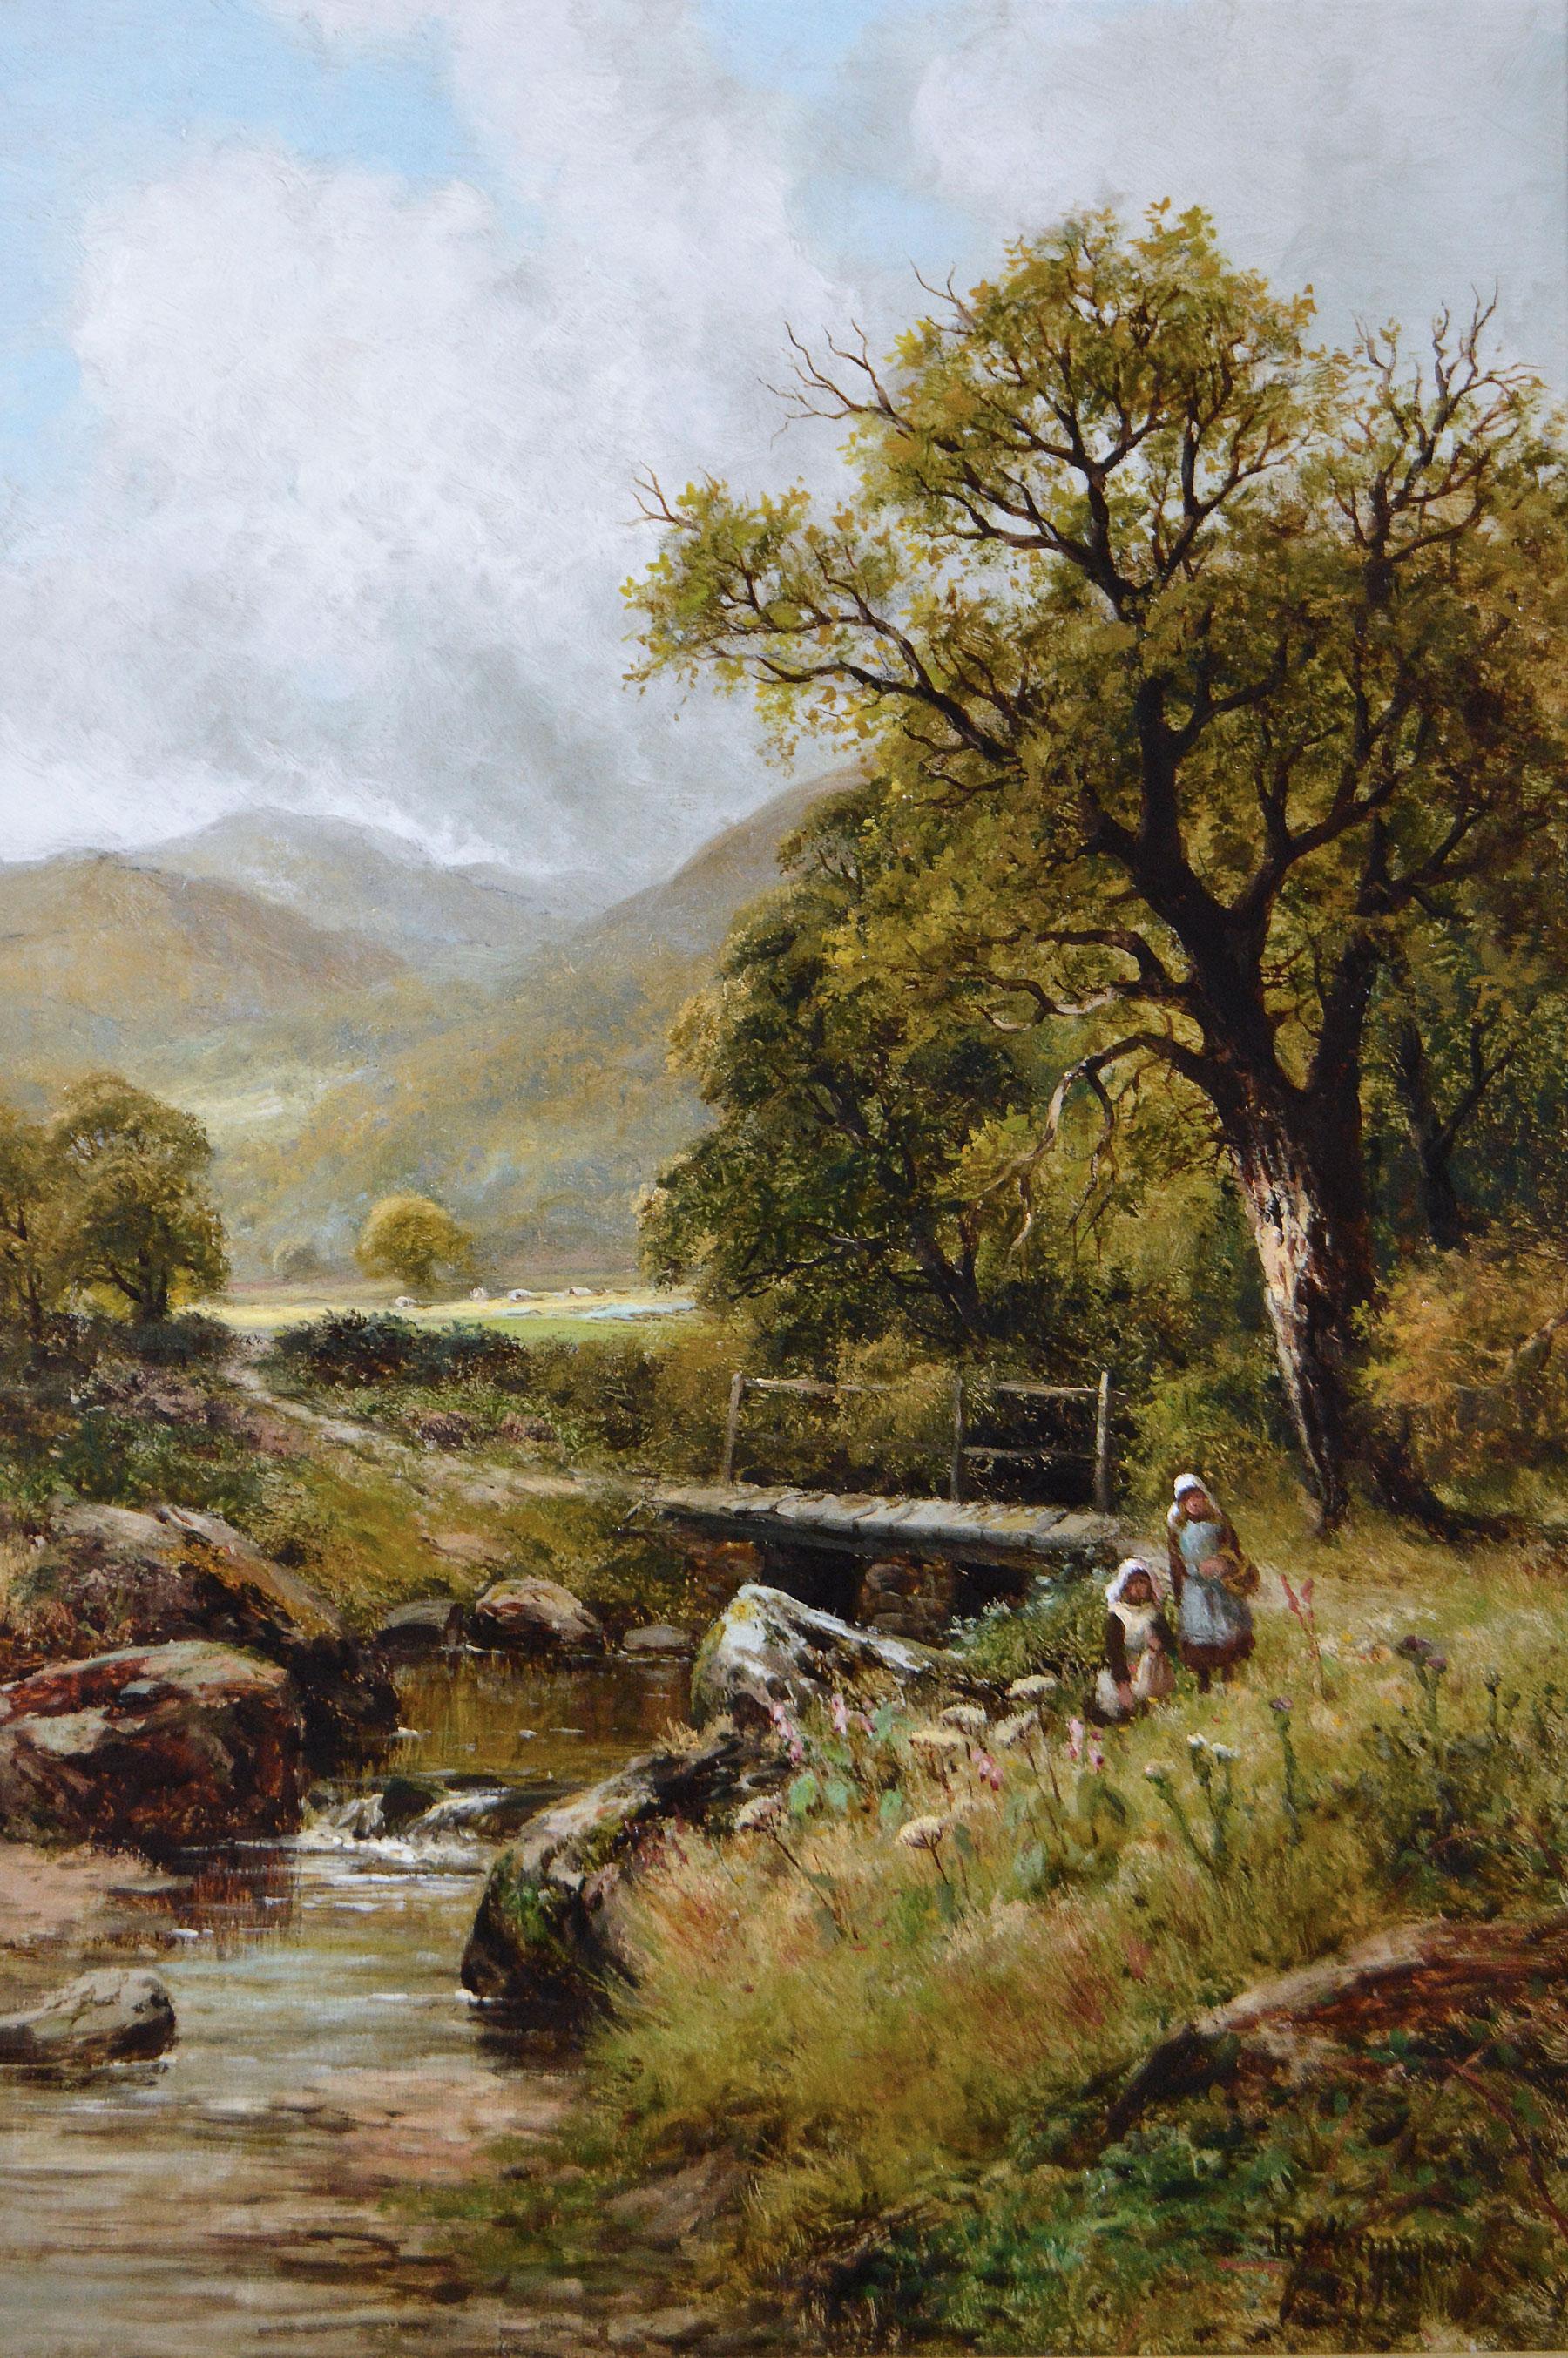 Peinture à l'huile de paysage du 19e siècle représentant des personnages cueillant des fleurs au bord d'une rivière - Painting de Robert John Hammond